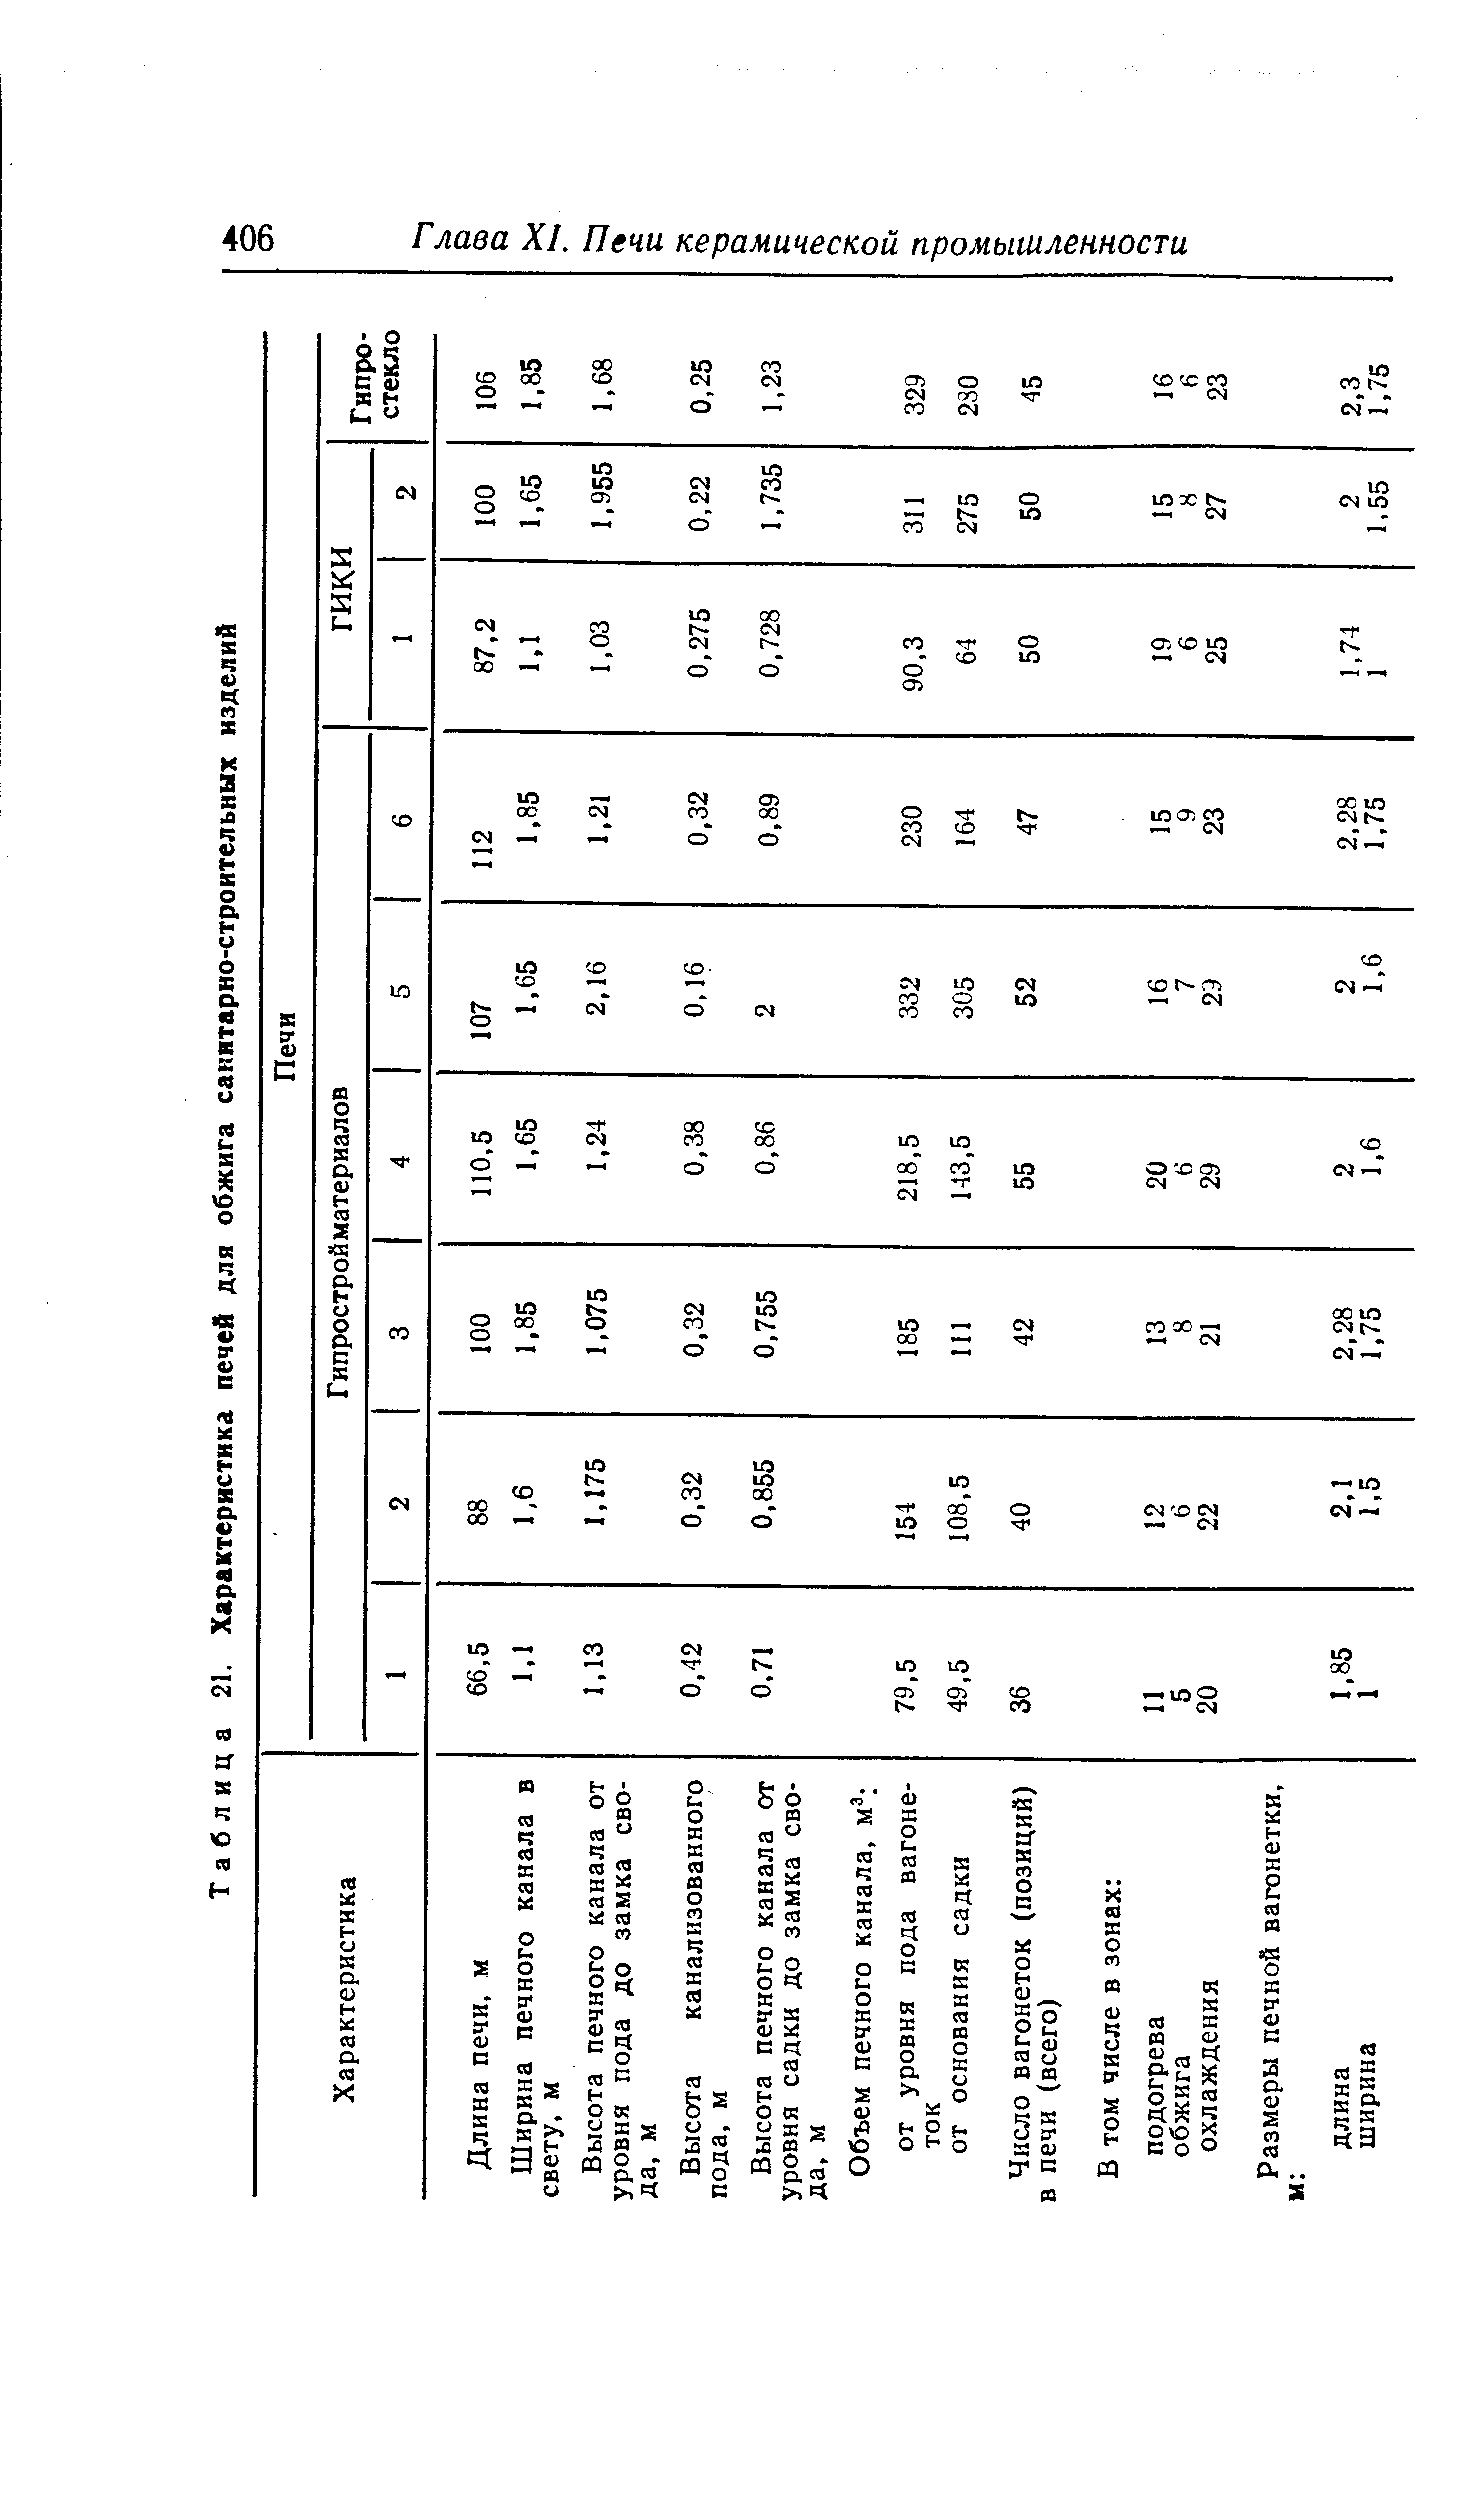 Таблица 21. Характеристика печей для обжига санитарно-строительных изделий
